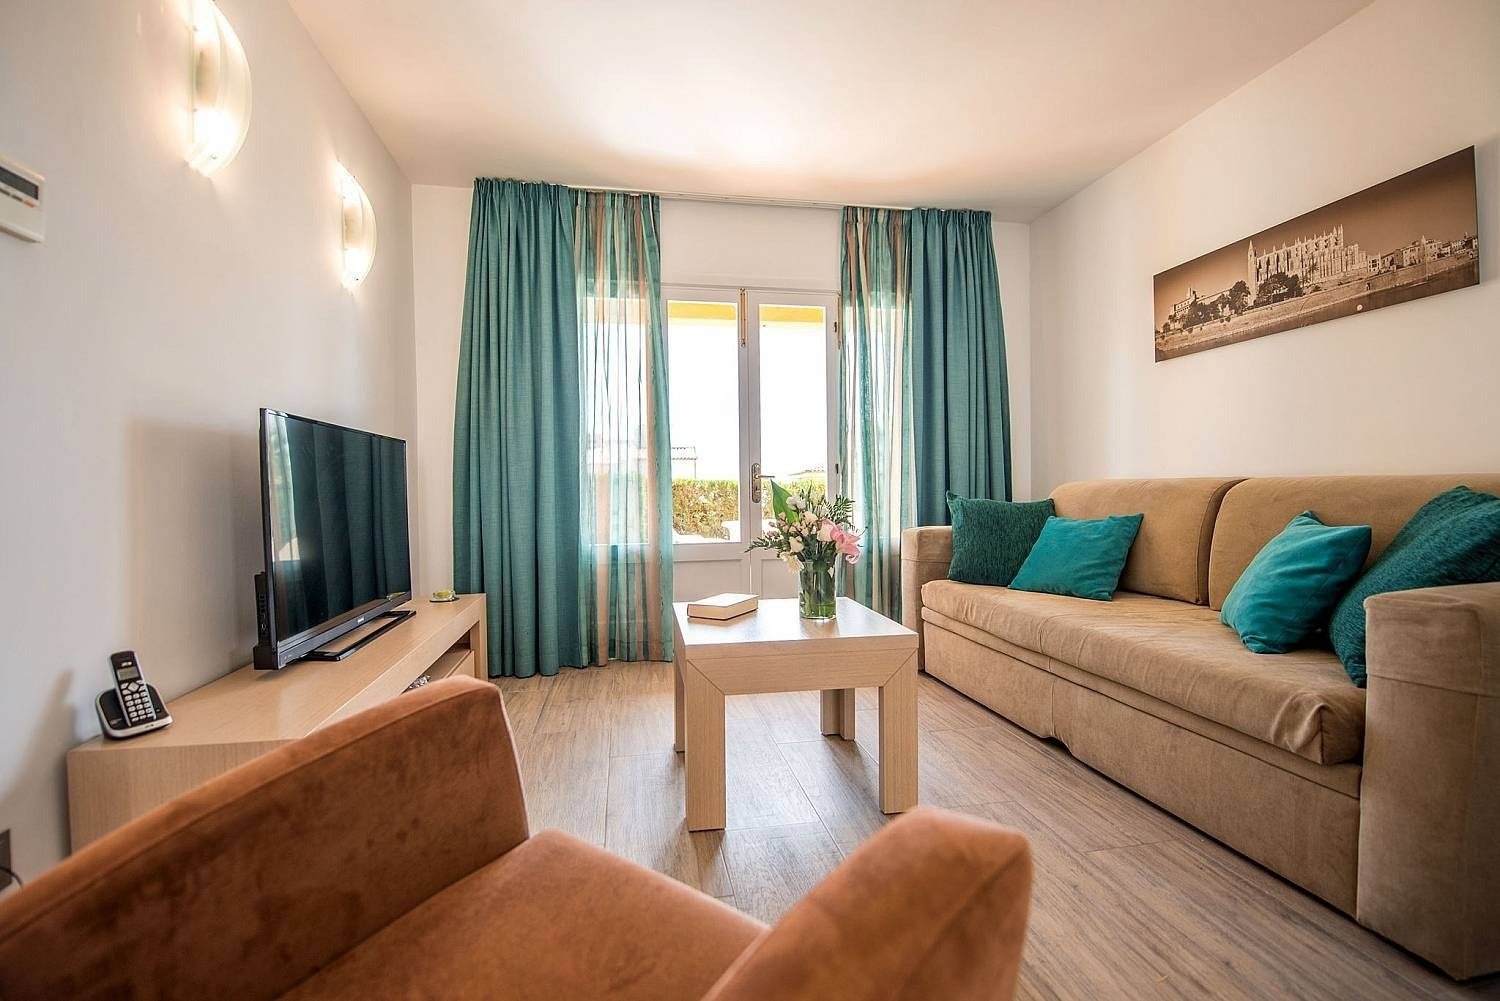 Detalle de zona de descanso con ventana del apartamento del hotel Ona Aucanada al Norte de Mallorca 